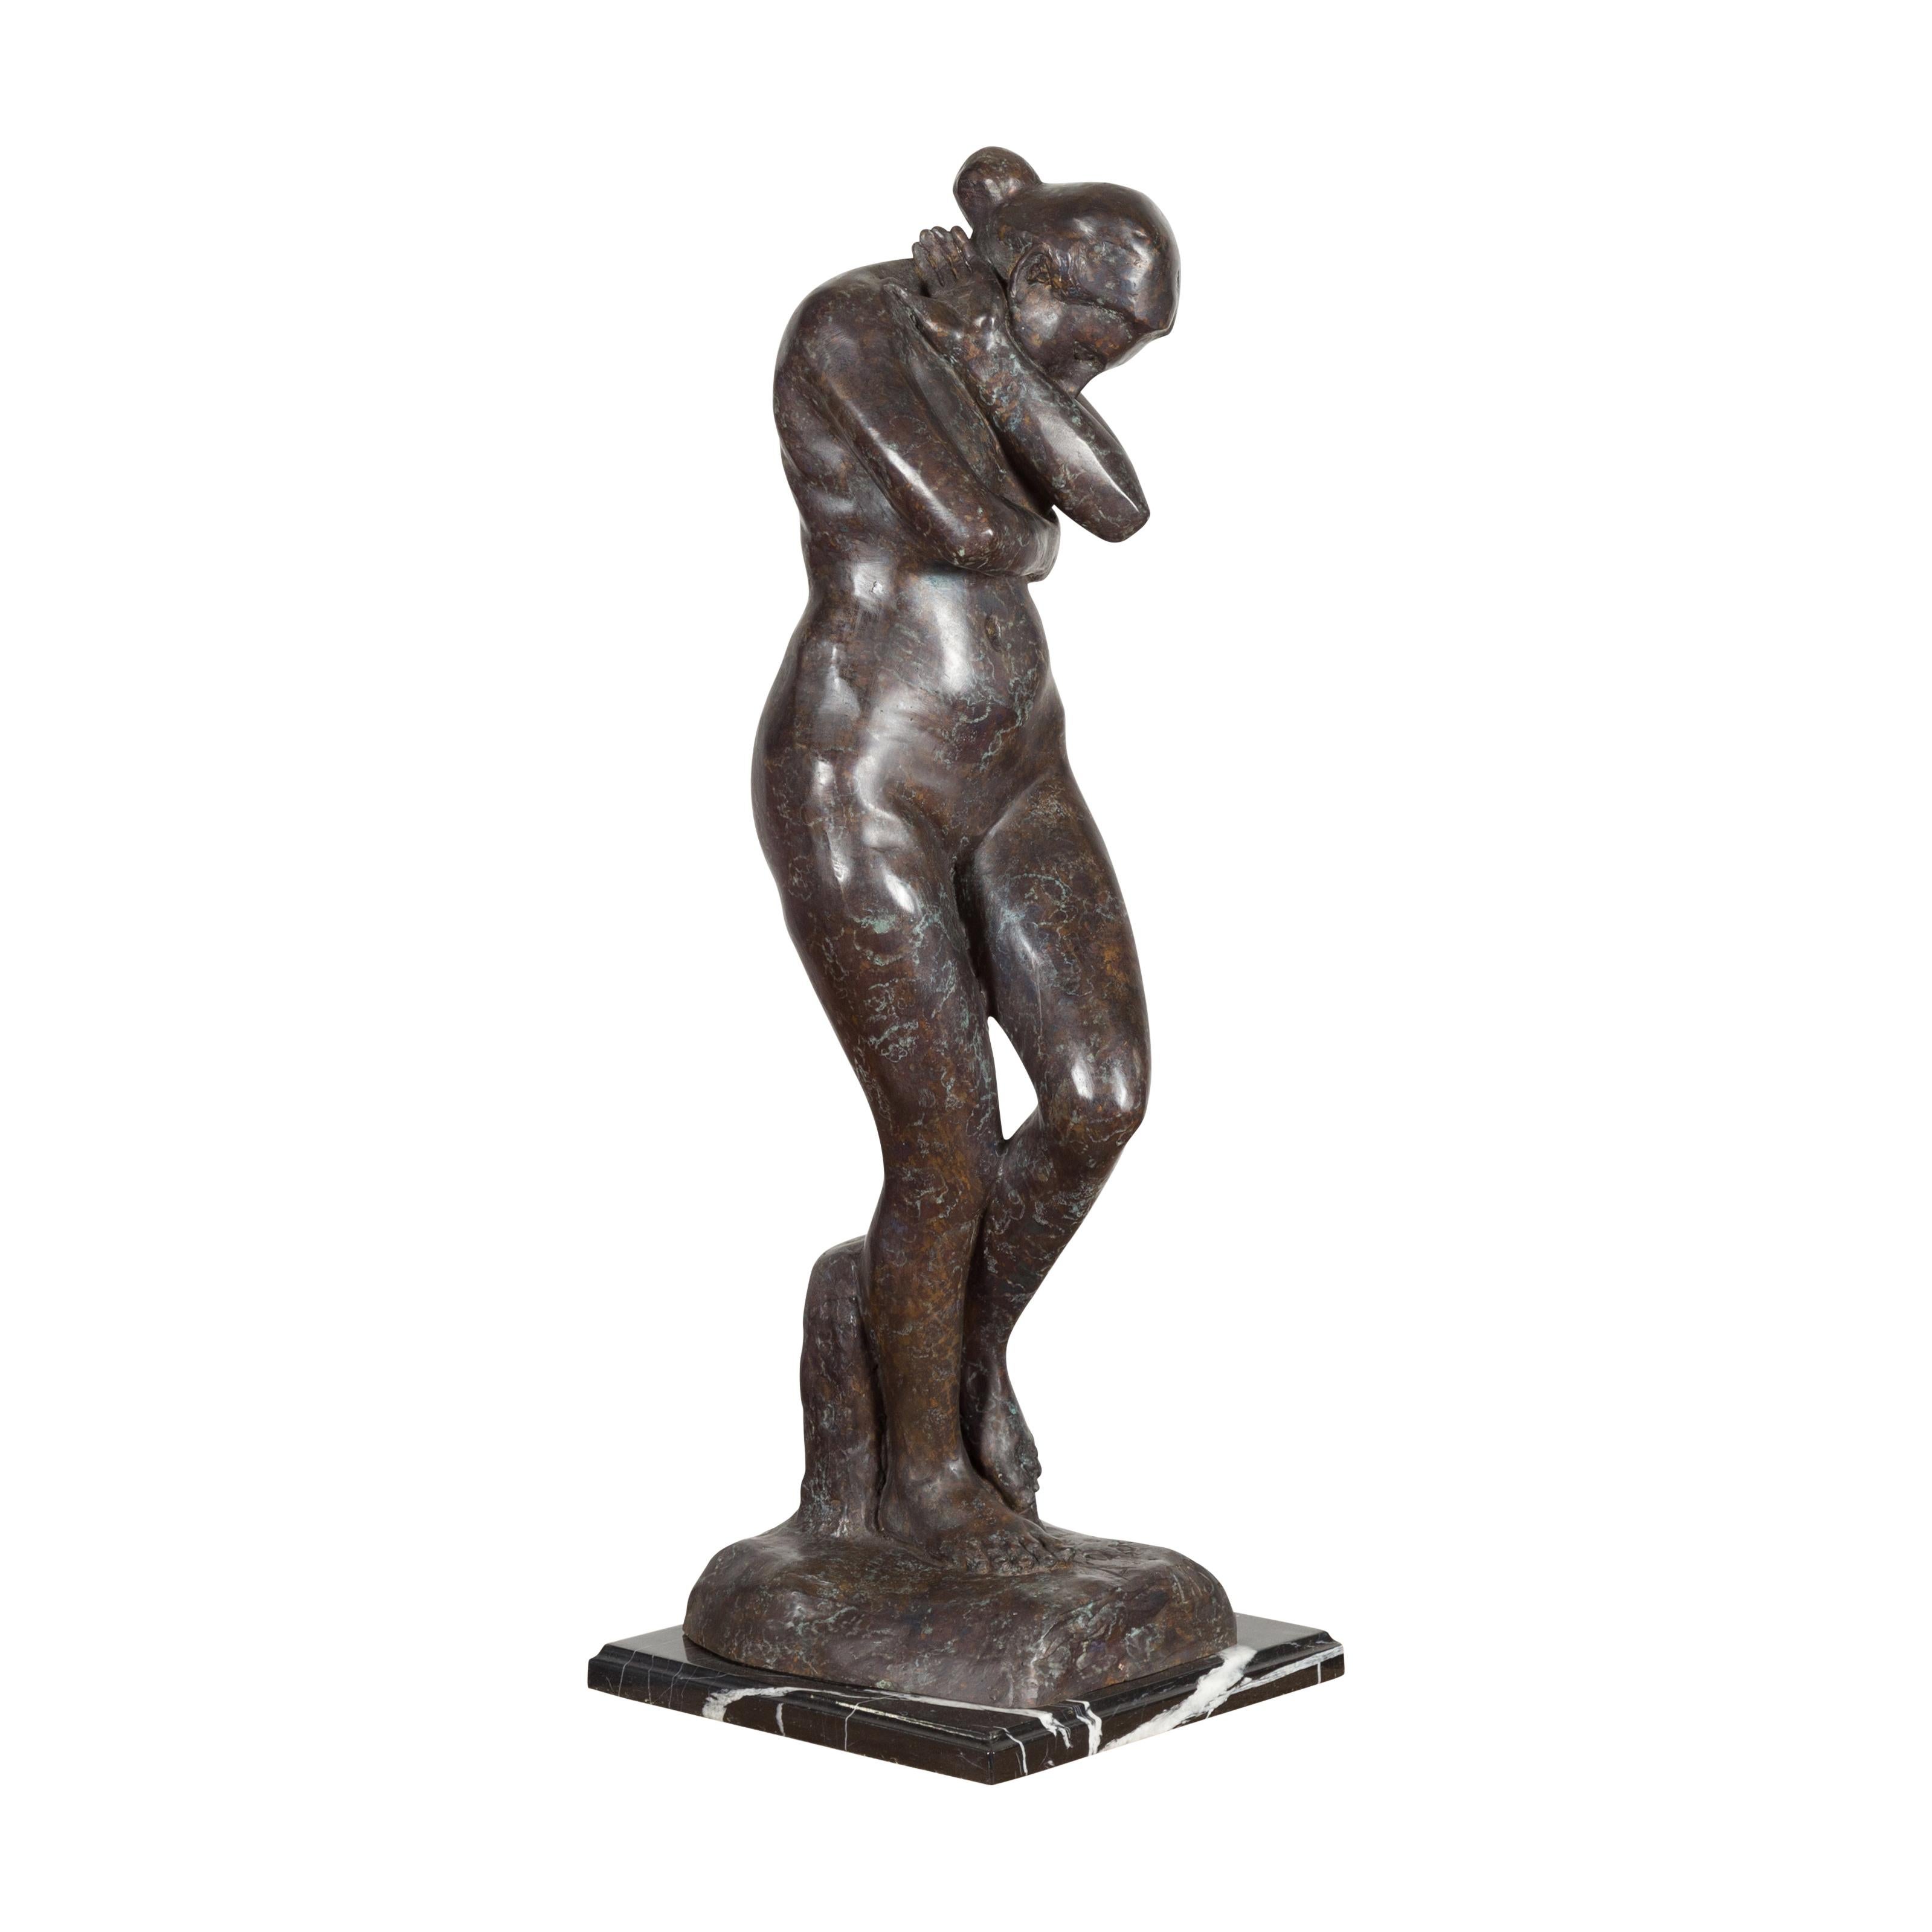 Sculpture en bronze coulé à la cire perdue, inspirée de l'Eve d'Auguste Rodin en patine sombre sur socle en marbre veiné noir et blanc. Cet article est disponible dès maintenant et il s'agit également d'une production en cours. Réalisée avec la